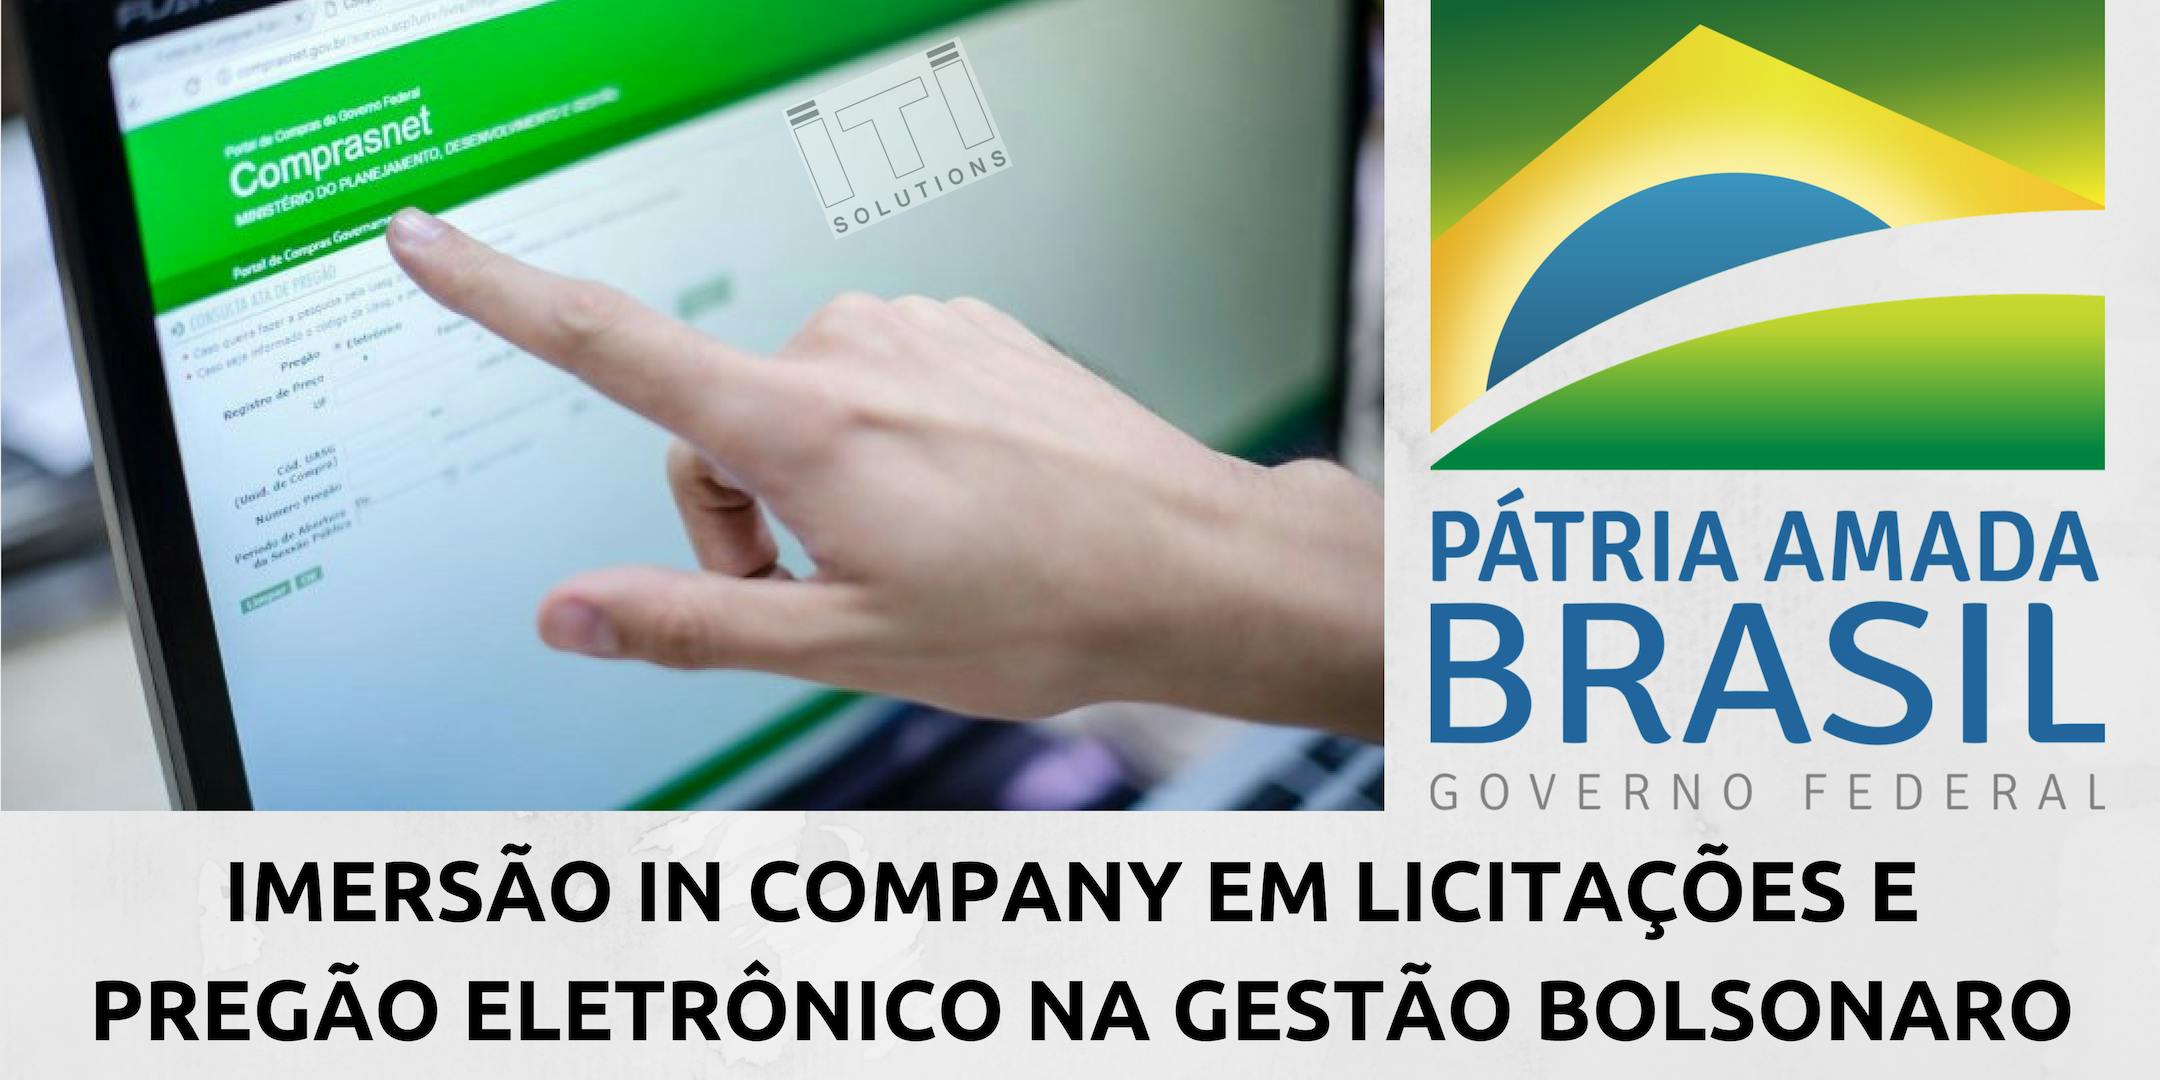 TREINAMENTO IN COMPANY EM LICITAÇÕES - ÁREA COMERCIAL/BACKOFFICE - RIBEIRÃO PRETO